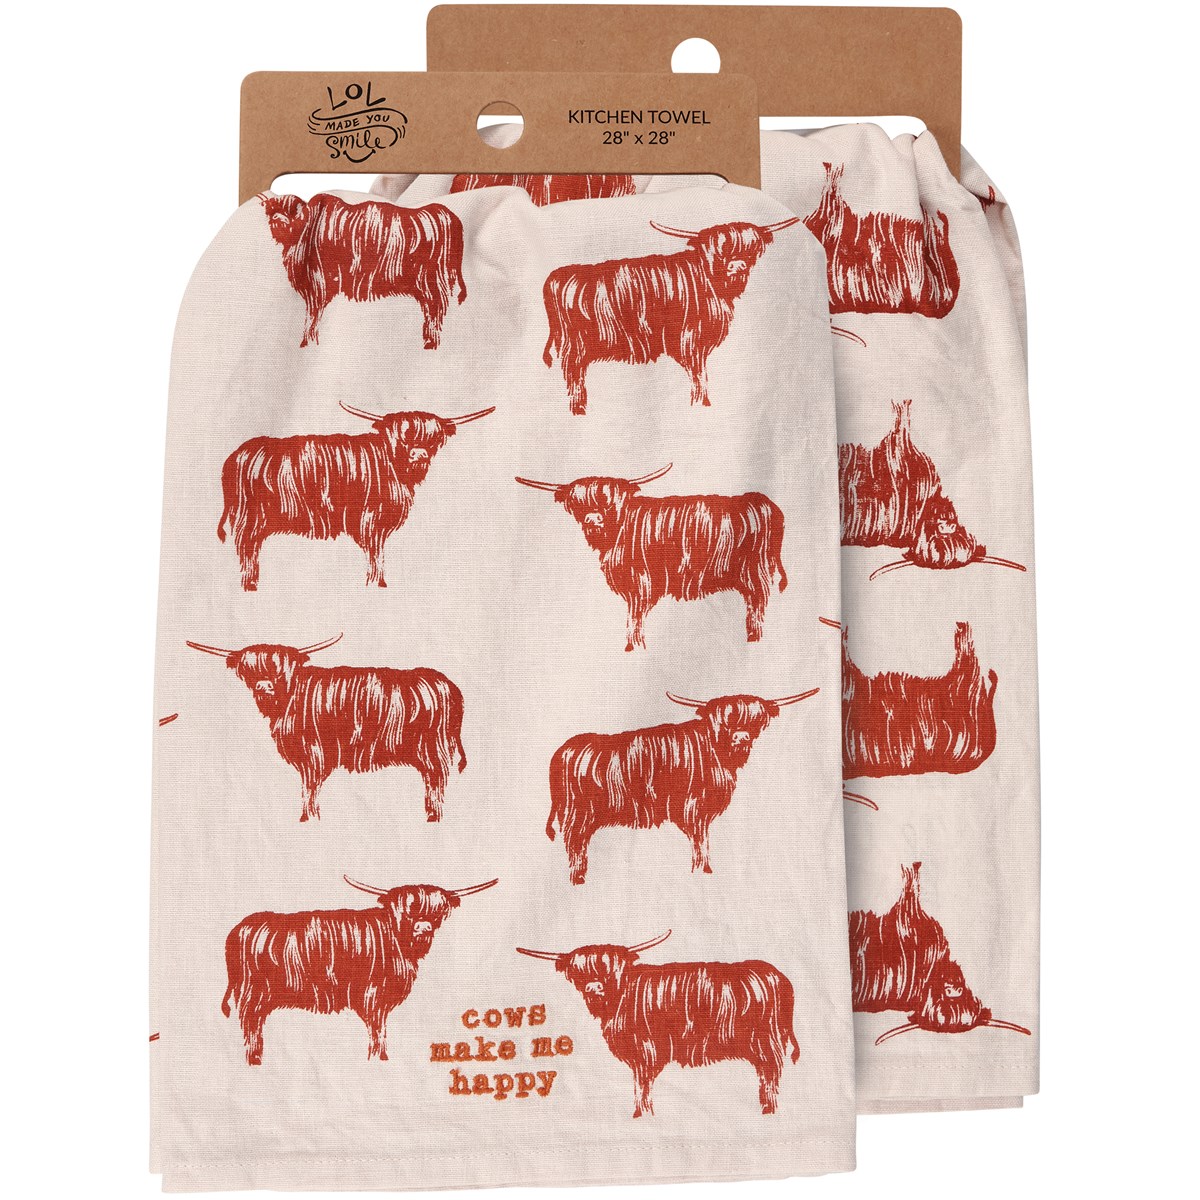 Cows Make Me Happy Kitchen Towel - Cotton, Linen